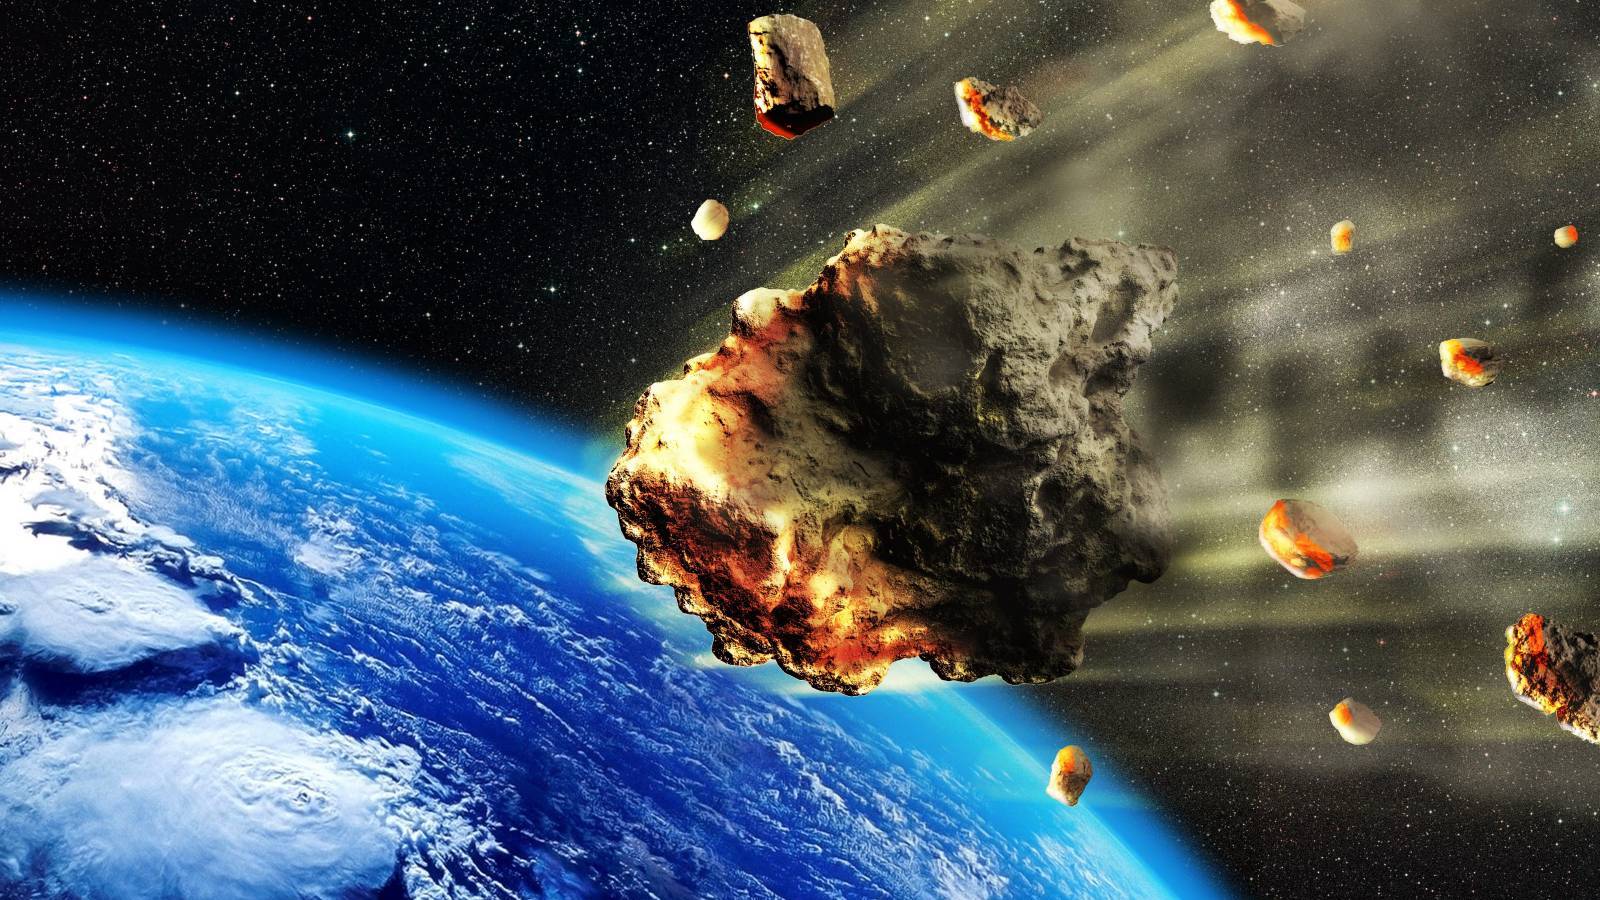 La NASA AVERTIT que les astéroïdes se dirigent maintenant vers la Terre